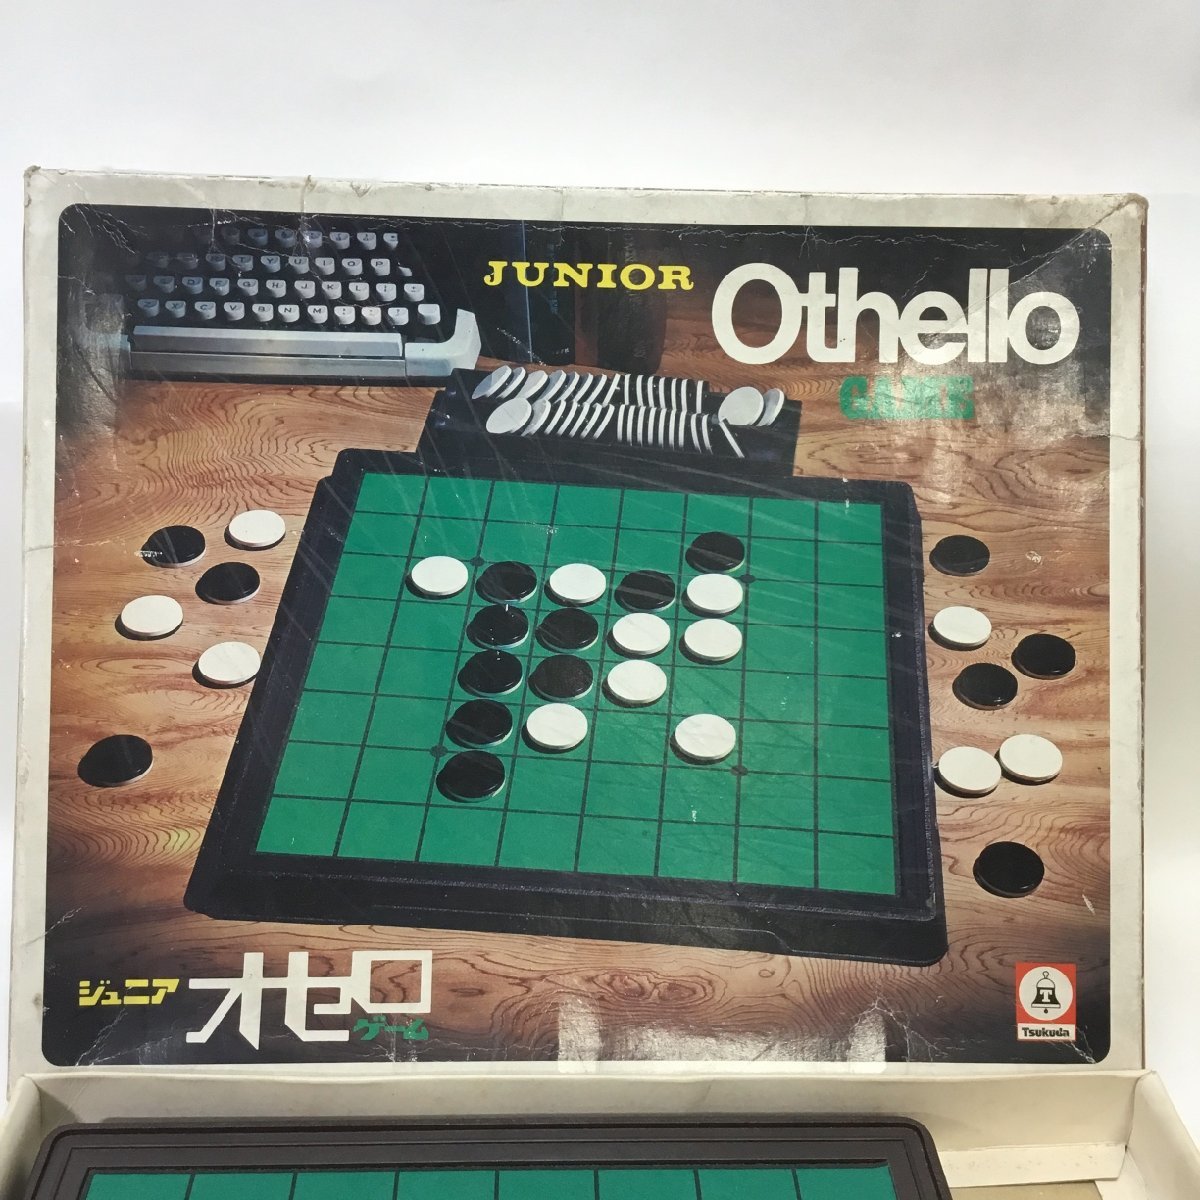 [ б/у товар / in voice регистрация магазин /CH] первый период примерно версия tsukda Othello настольная игра ценный premium RS0302/0000